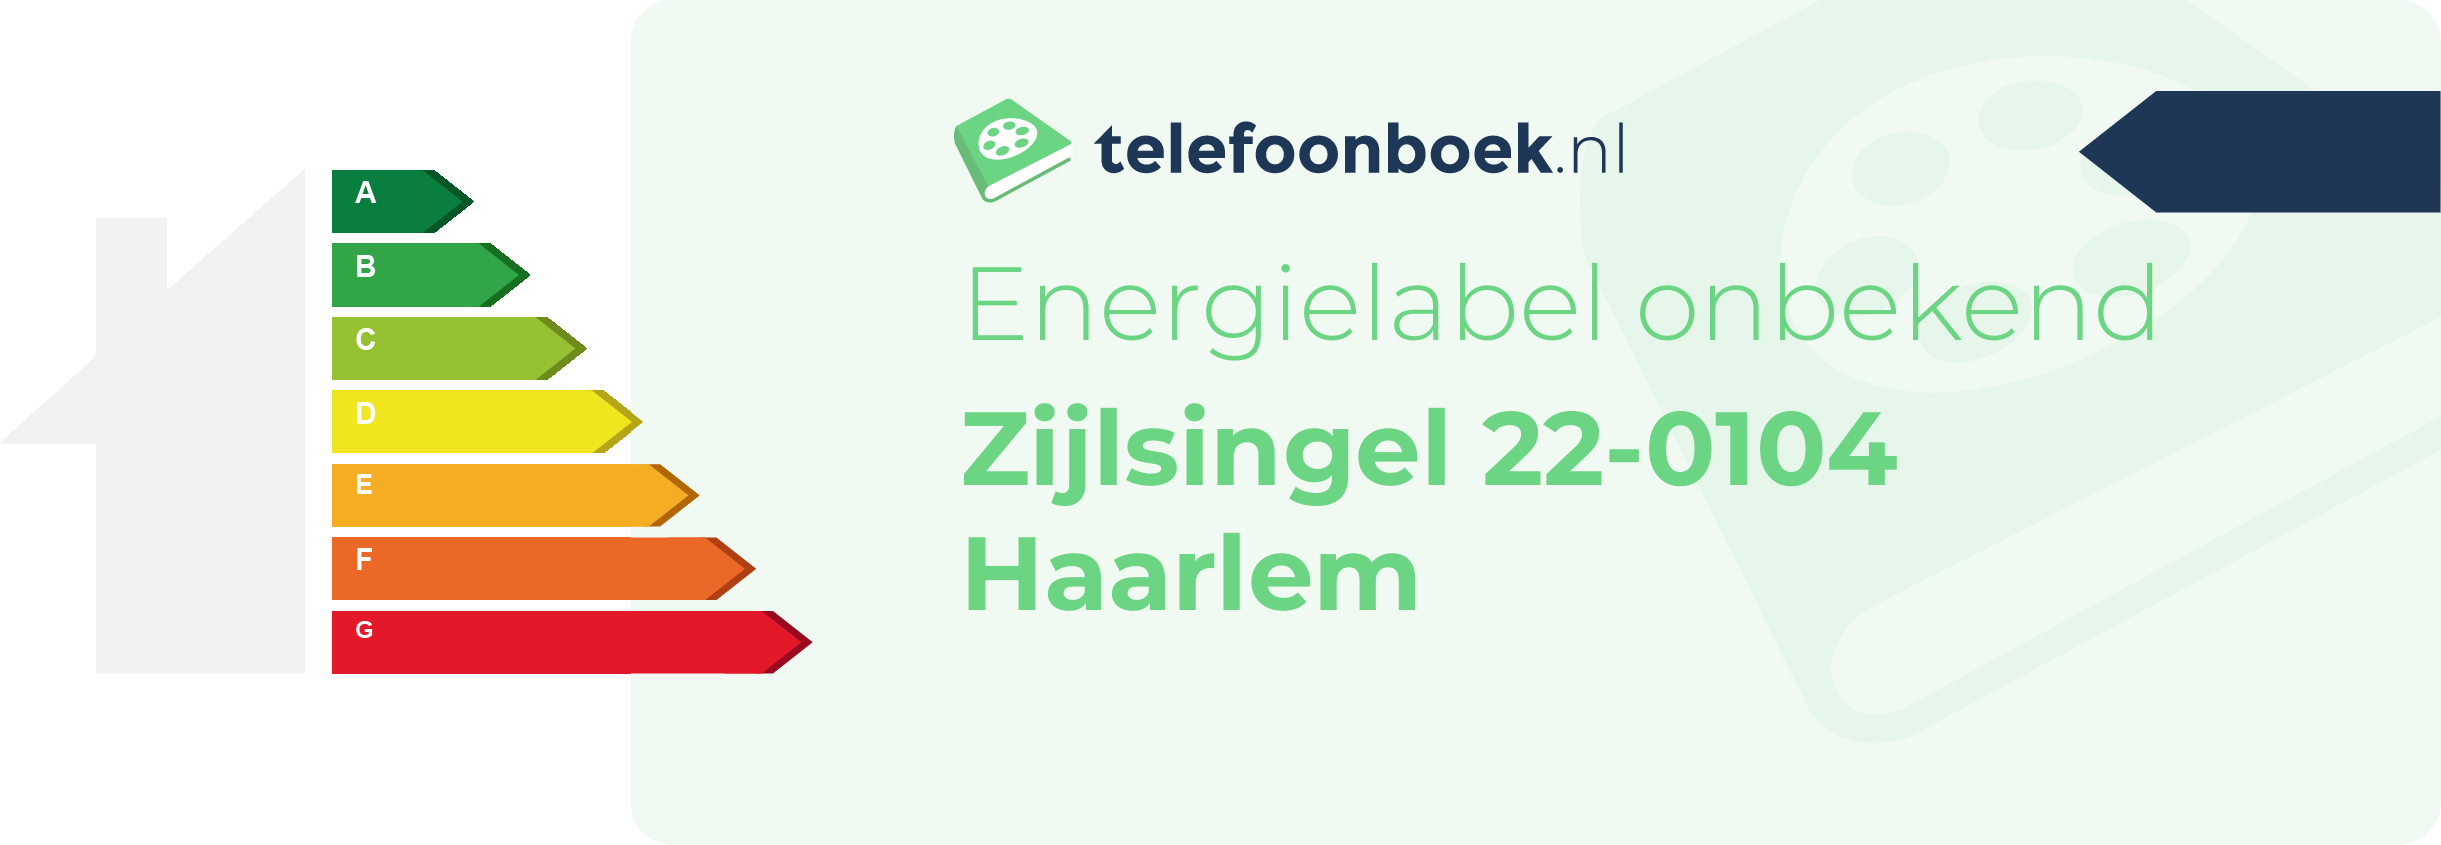 Energielabel Zijlsingel 22-0104 Haarlem